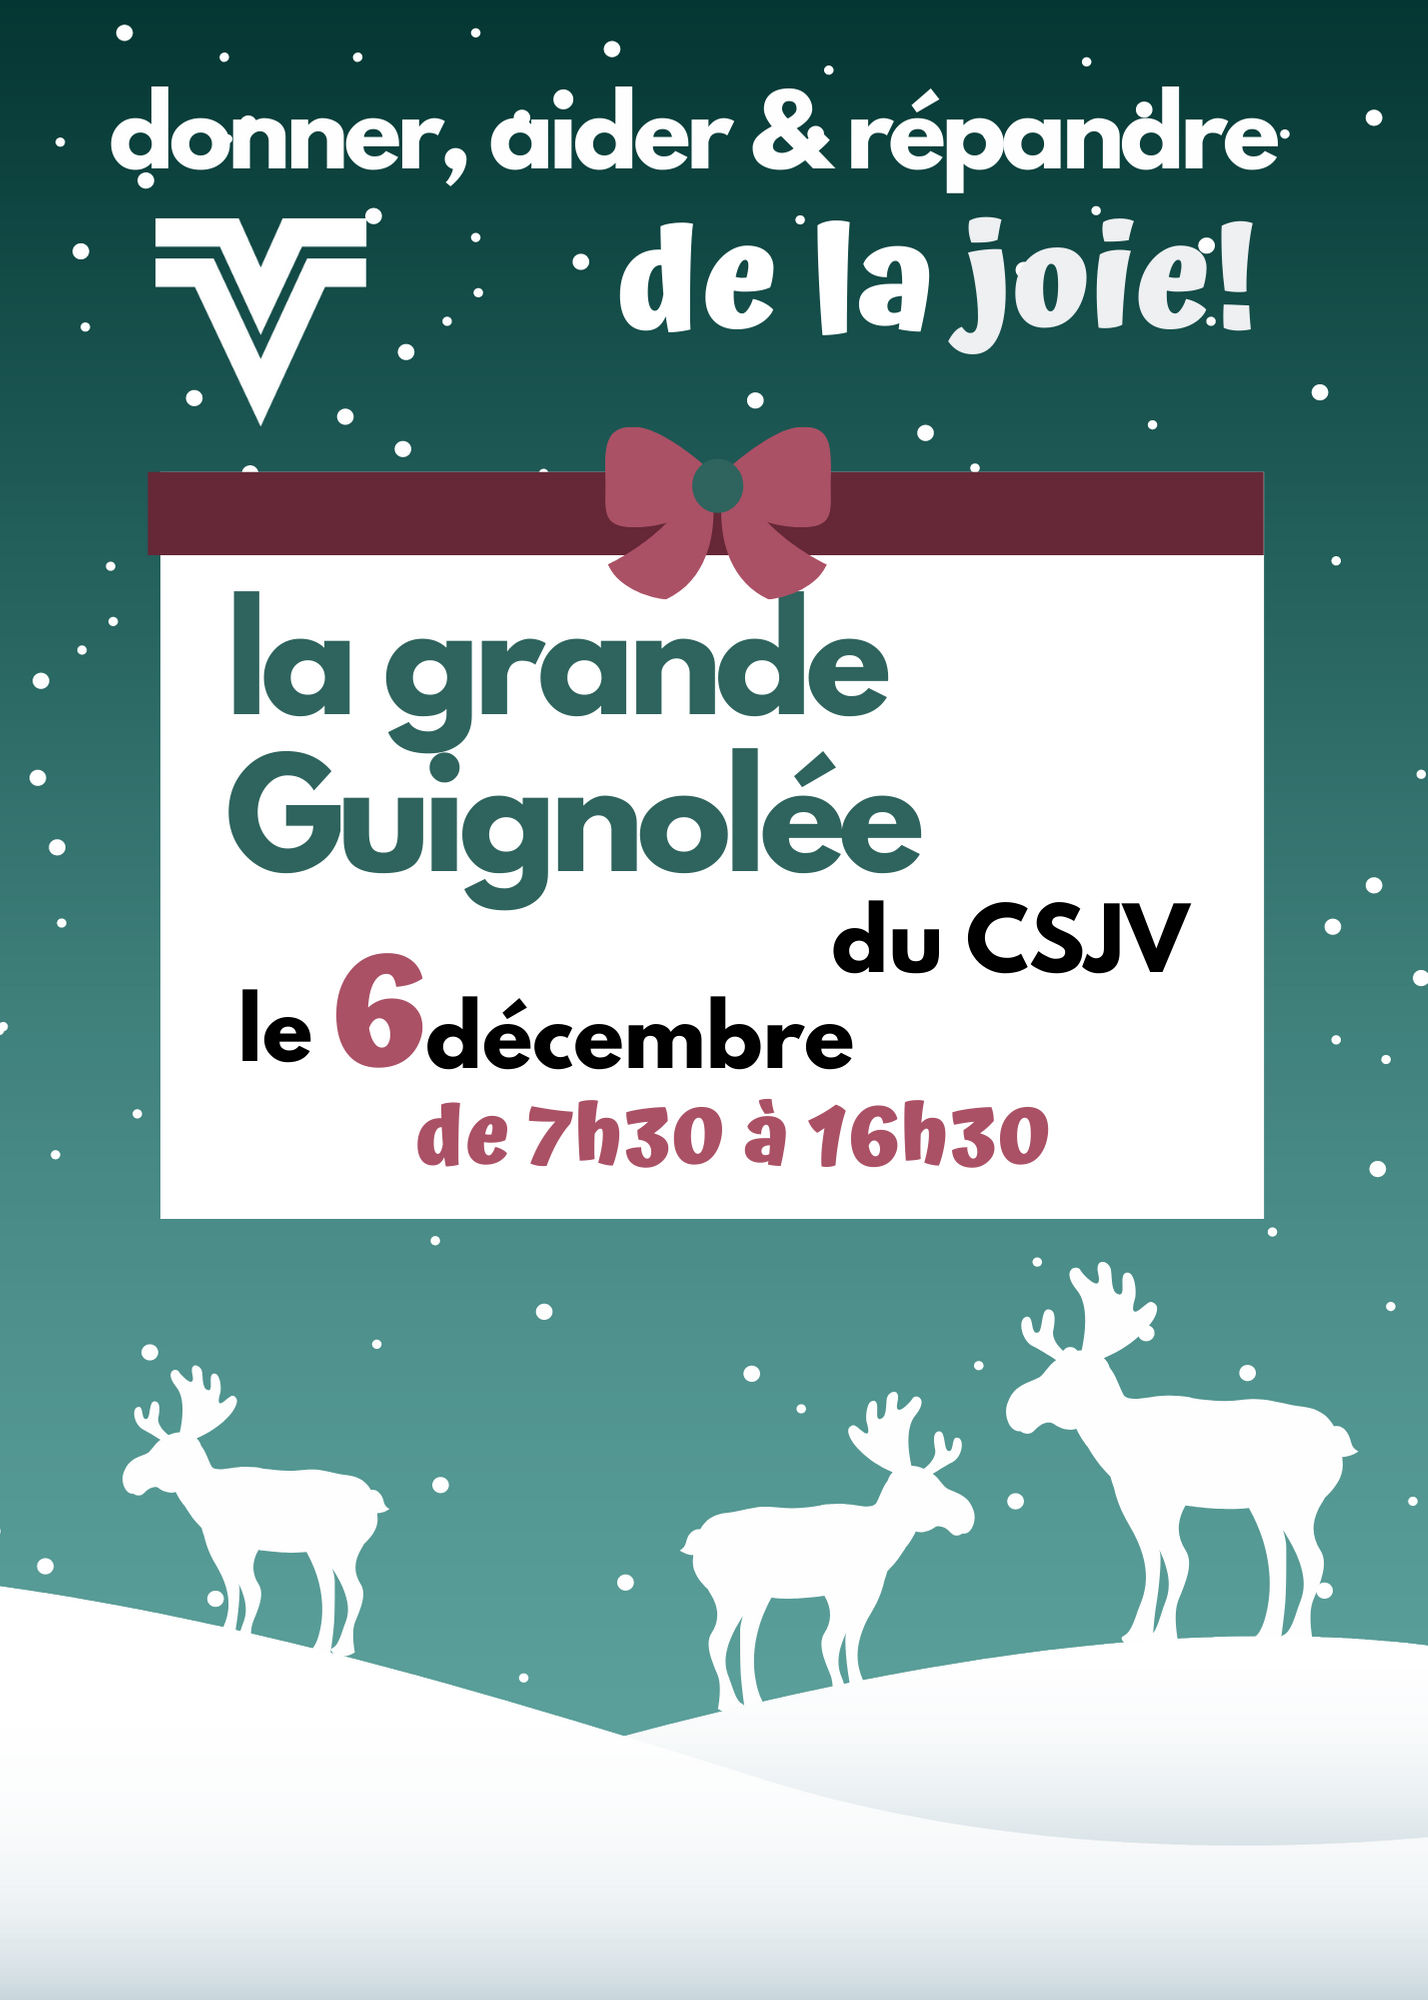 Annonce de la tenue de la Grande Guignolée au CSJV le 6 décembre prochain. 